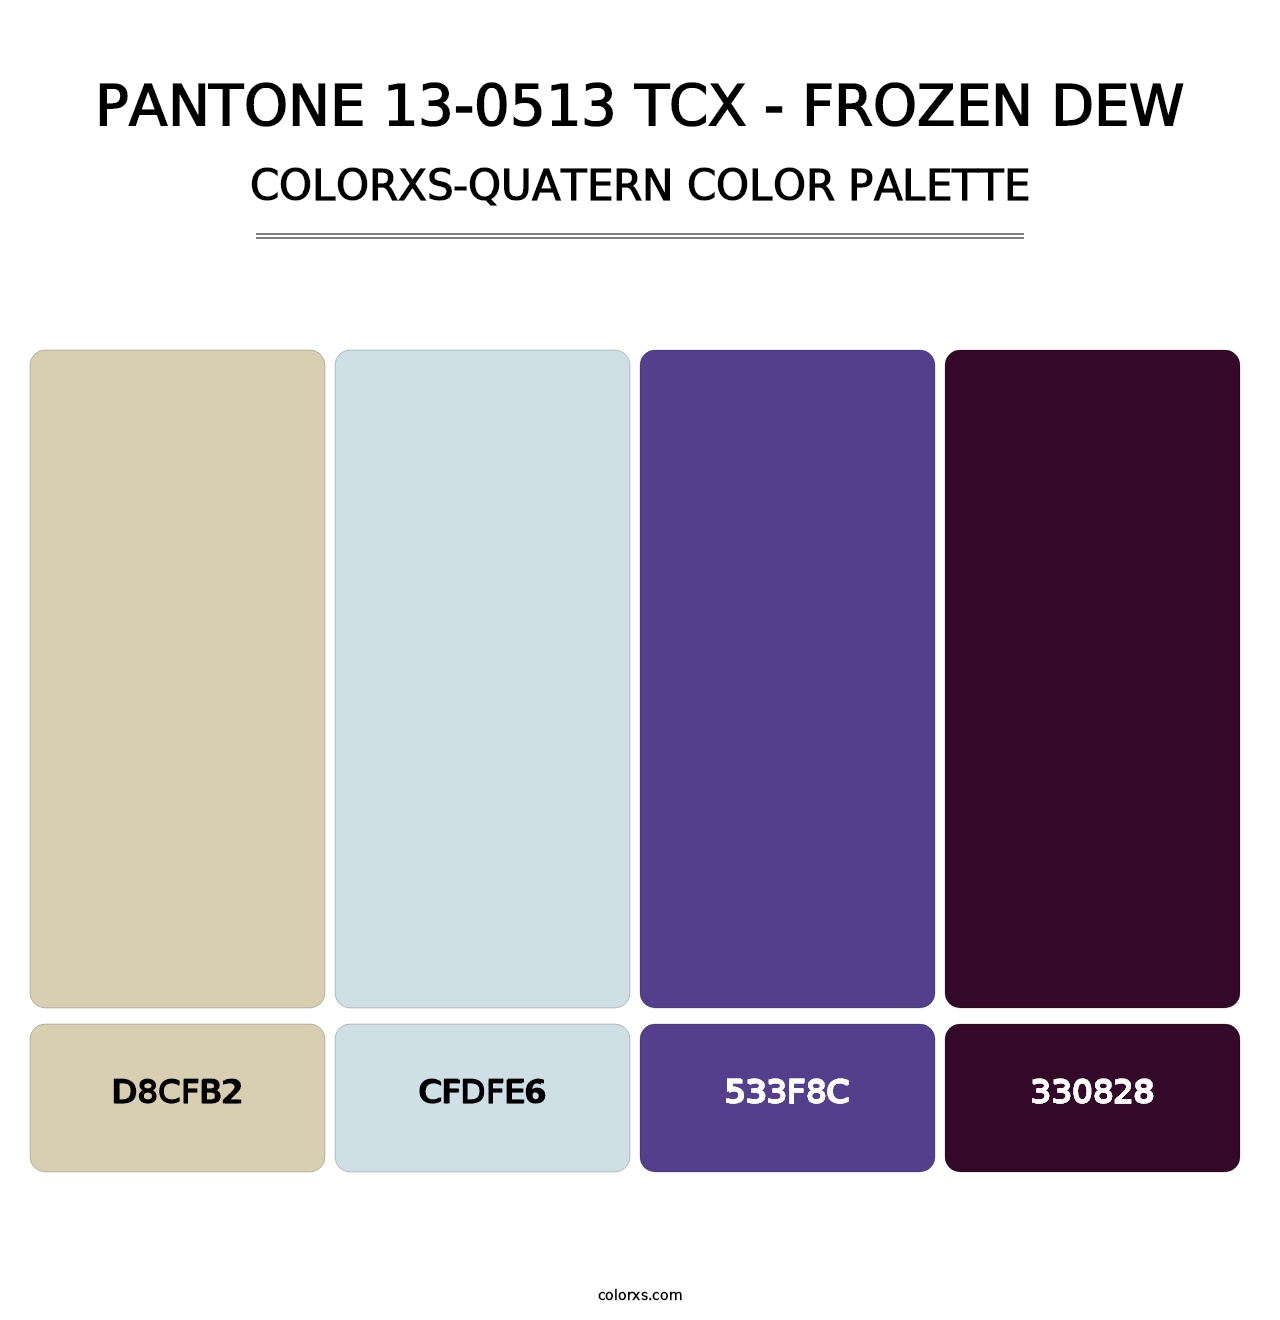 PANTONE 13-0513 TCX - Frozen Dew - Colorxs Quatern Palette